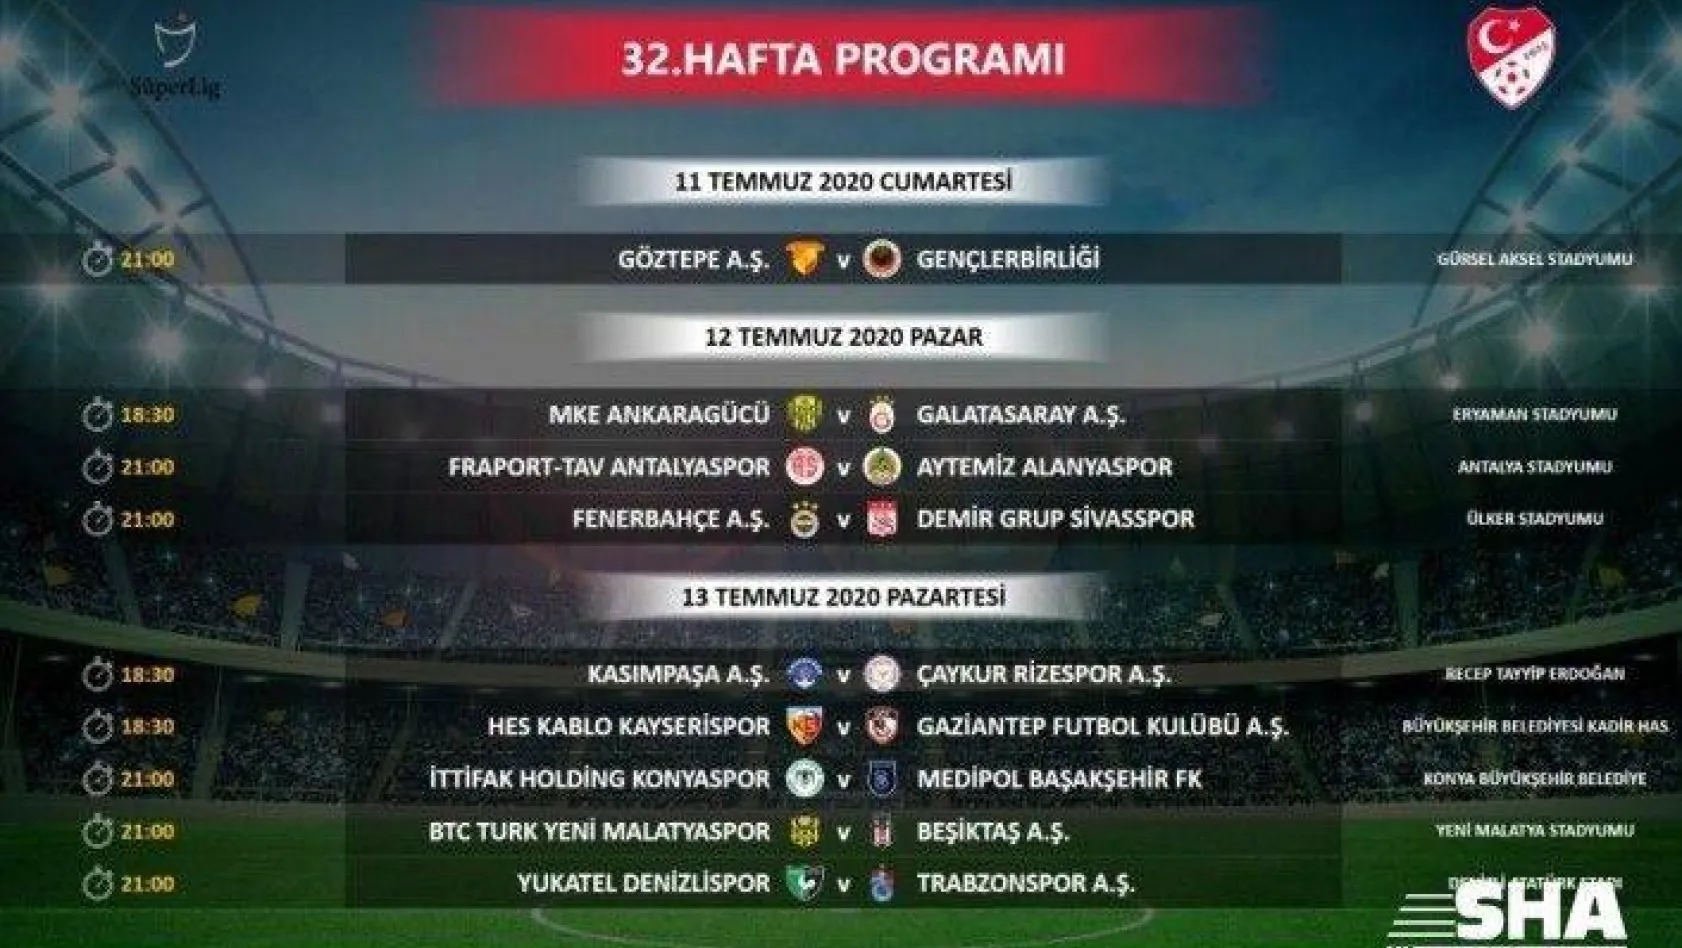 Süper Lig'de 32. hafta programında değişiklik